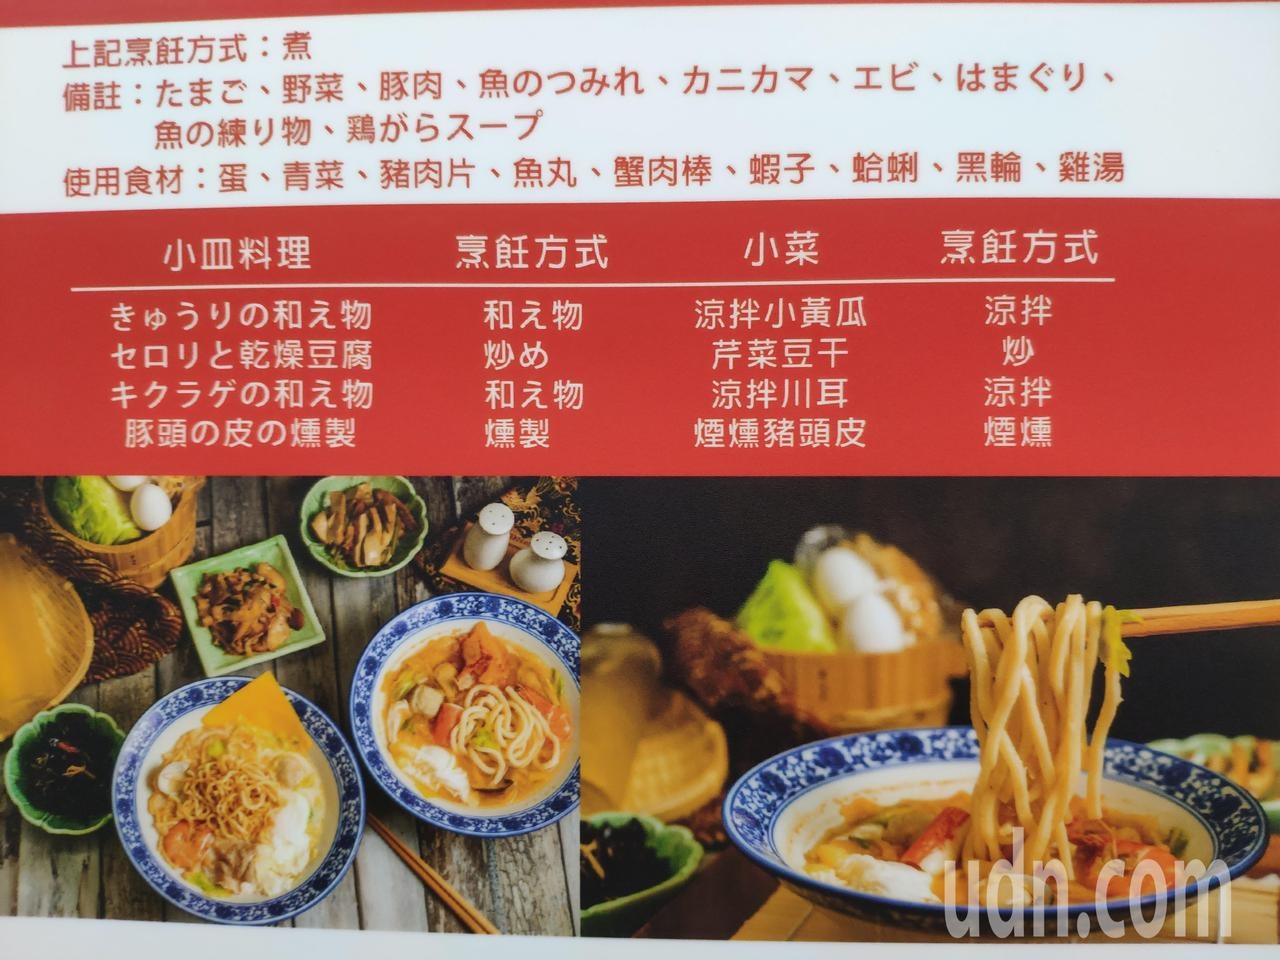 友善外客南市超前部署推多國語言優化菜單 好房網news